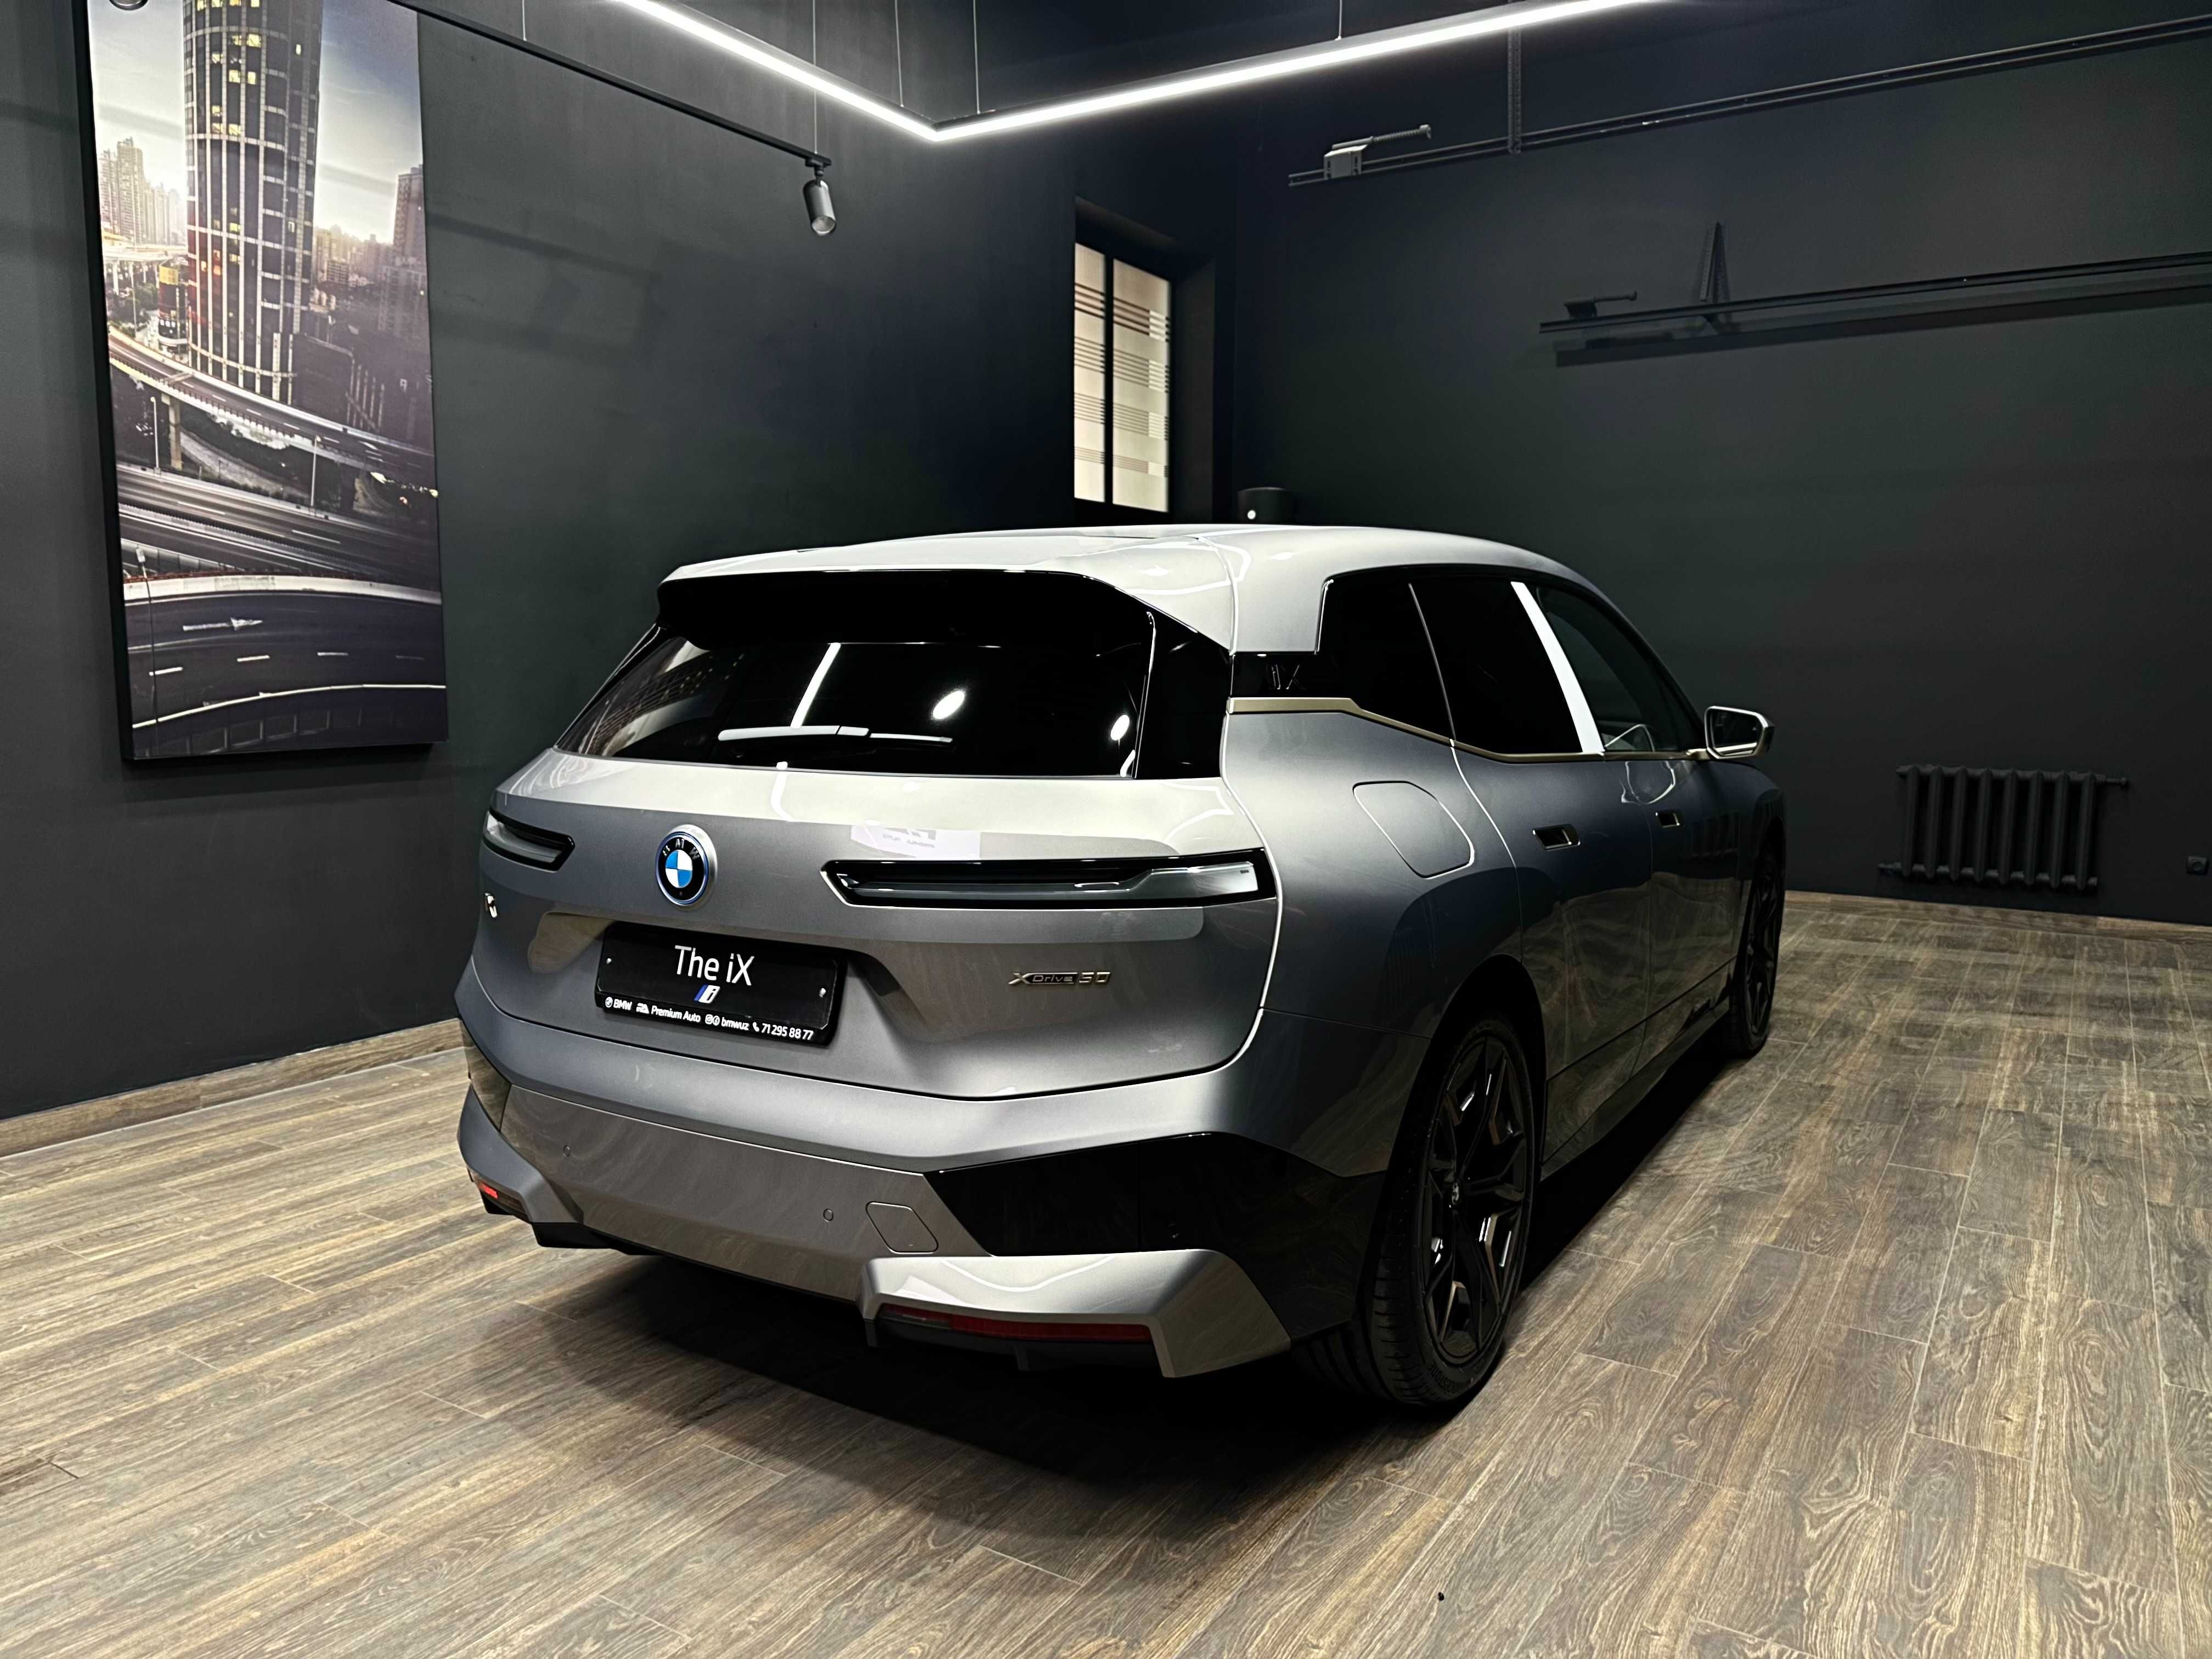 Продам новый BMW iX xDrive40i в наличии с гарантией 8 лет + подарок